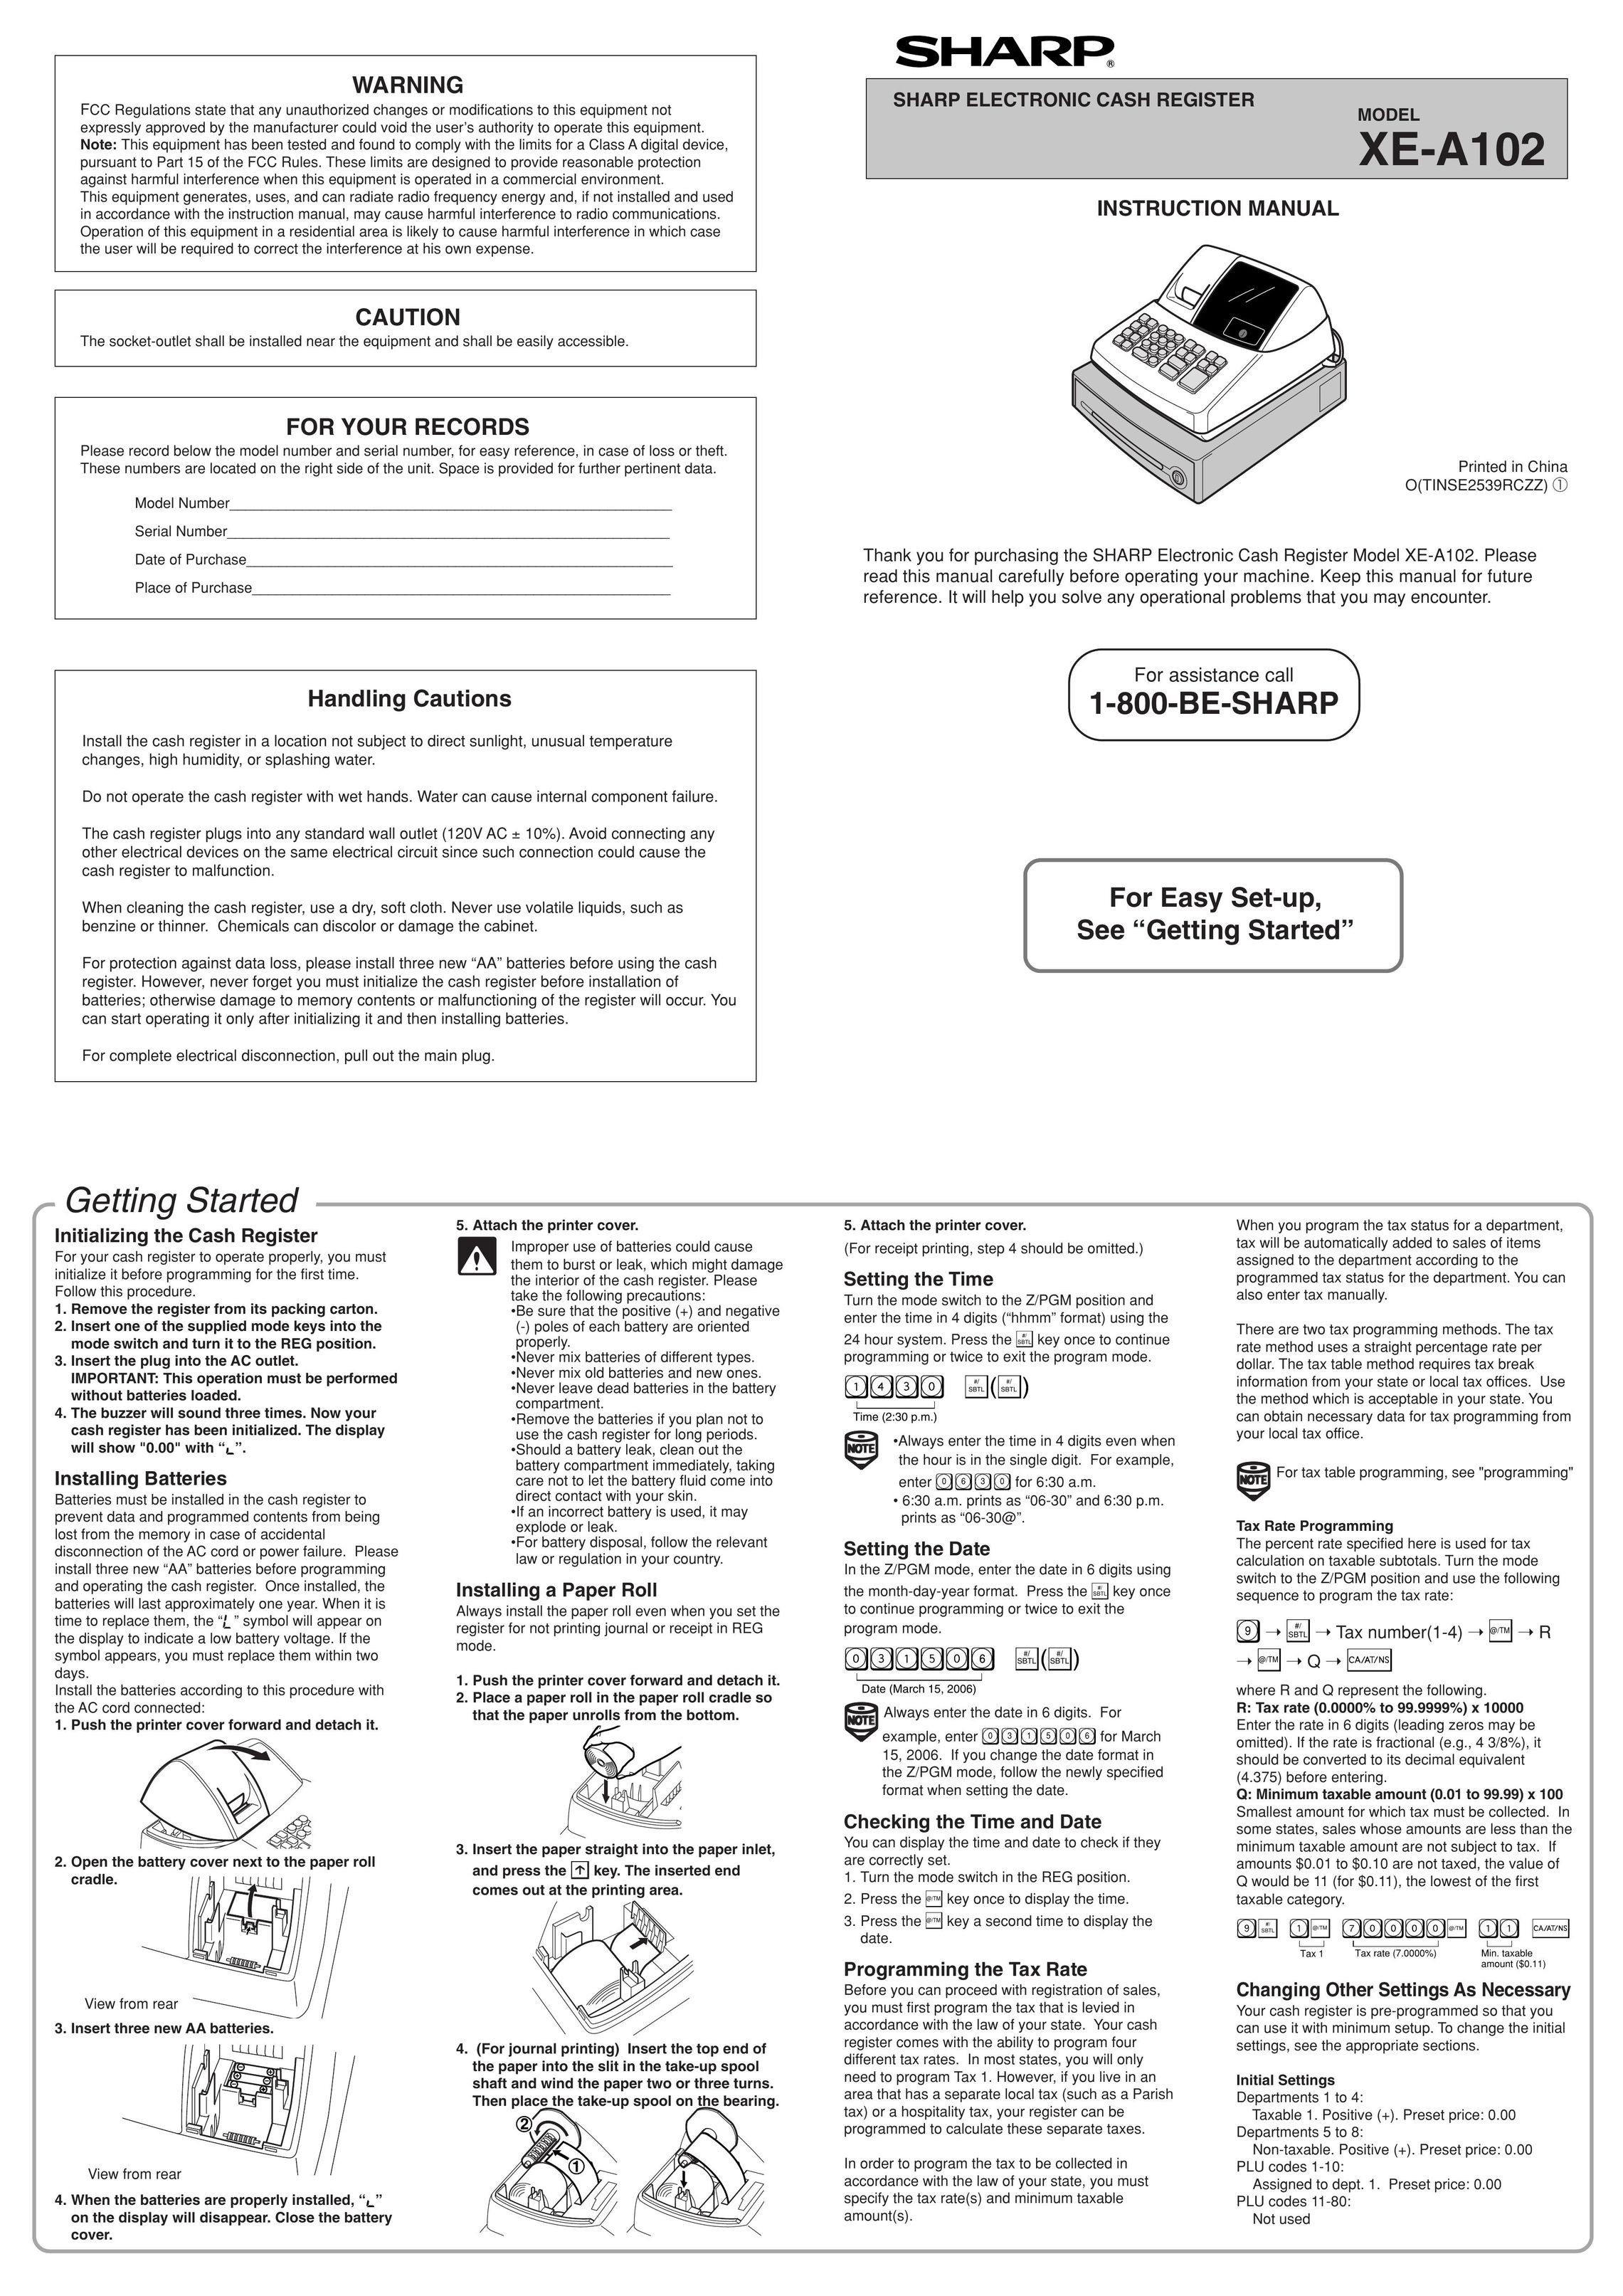 Sharp XE-A102 Cash Register User Manual